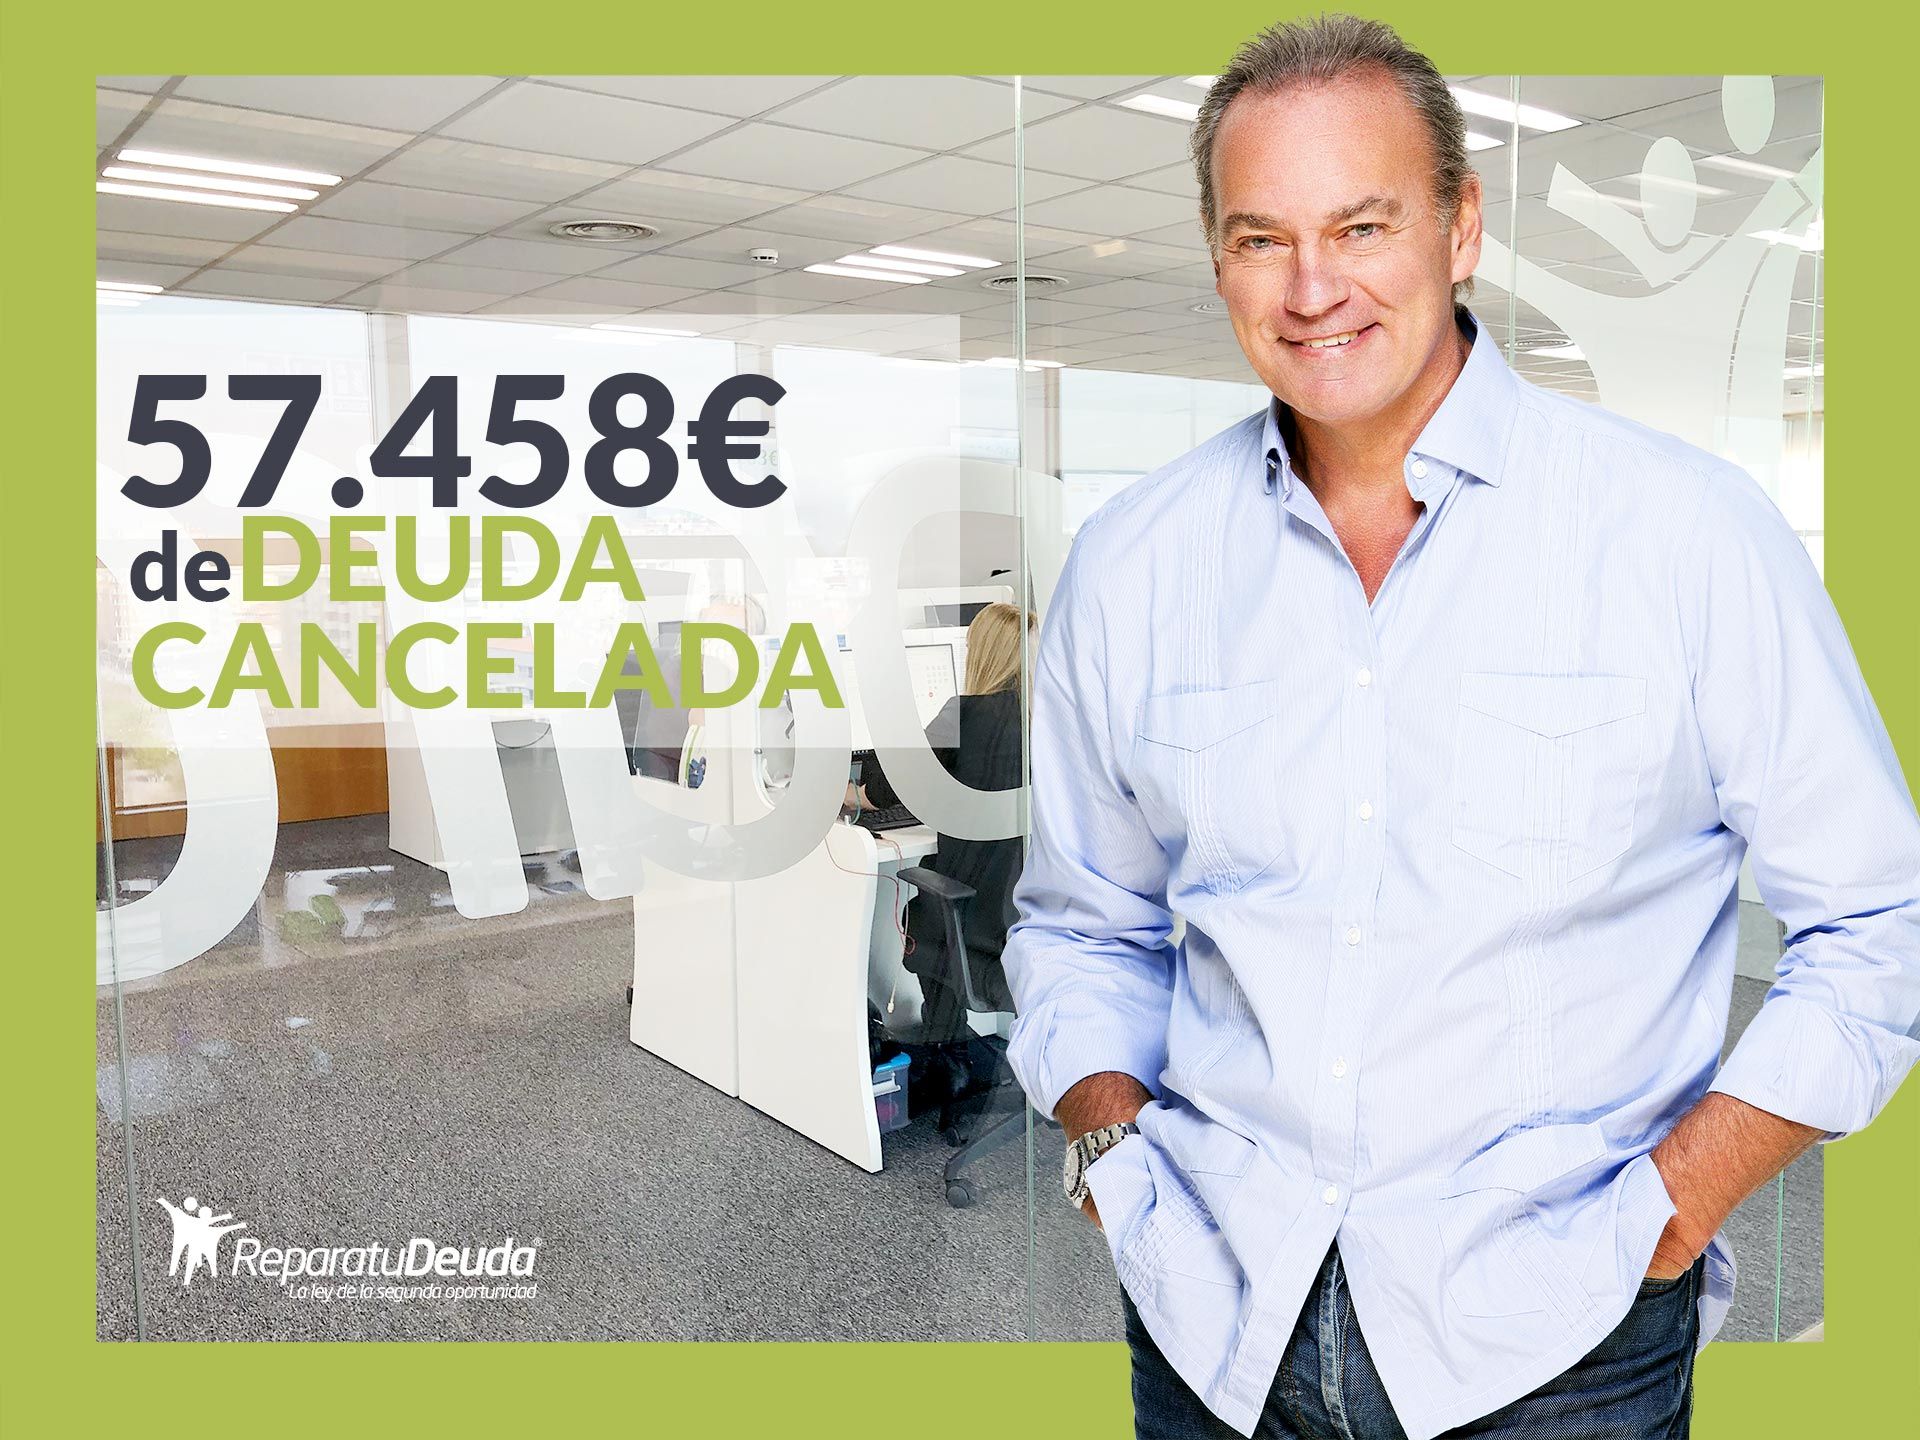 Repara tu Deuda Abogados cancela 57.458? en Fuenlabrada (Madrid) gracias a la Ley de Segunda Oportunidad